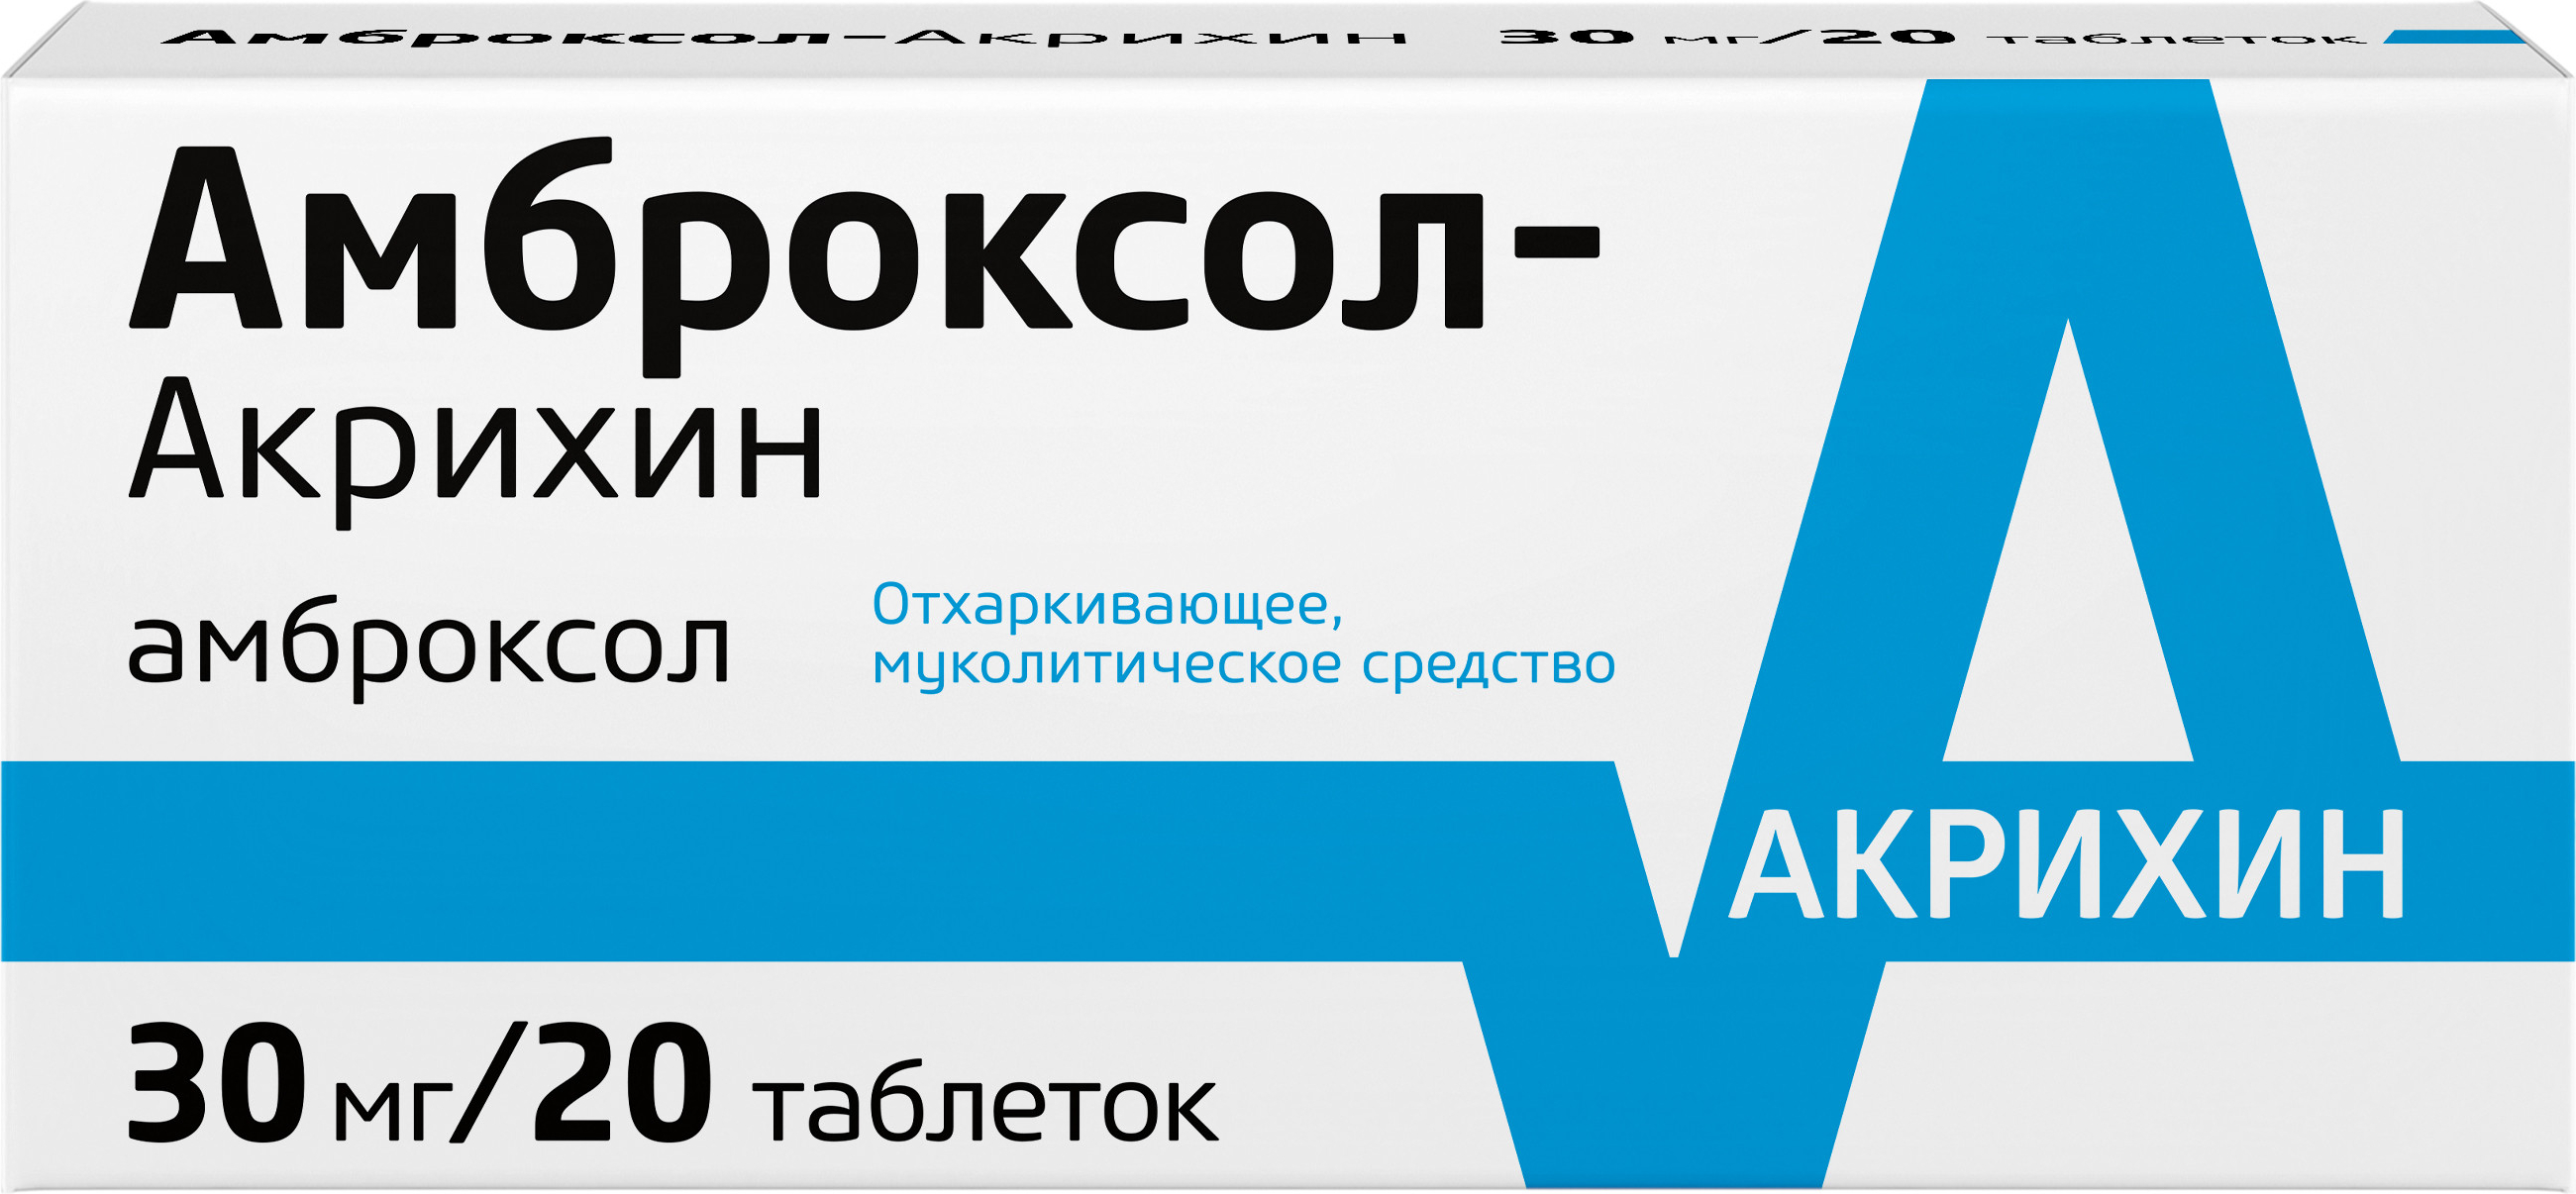 Амброксол-Акрихин, таблетки 30 мг, 20 шт. амброксол фармстандарт таблетки 30 мг 20 шт